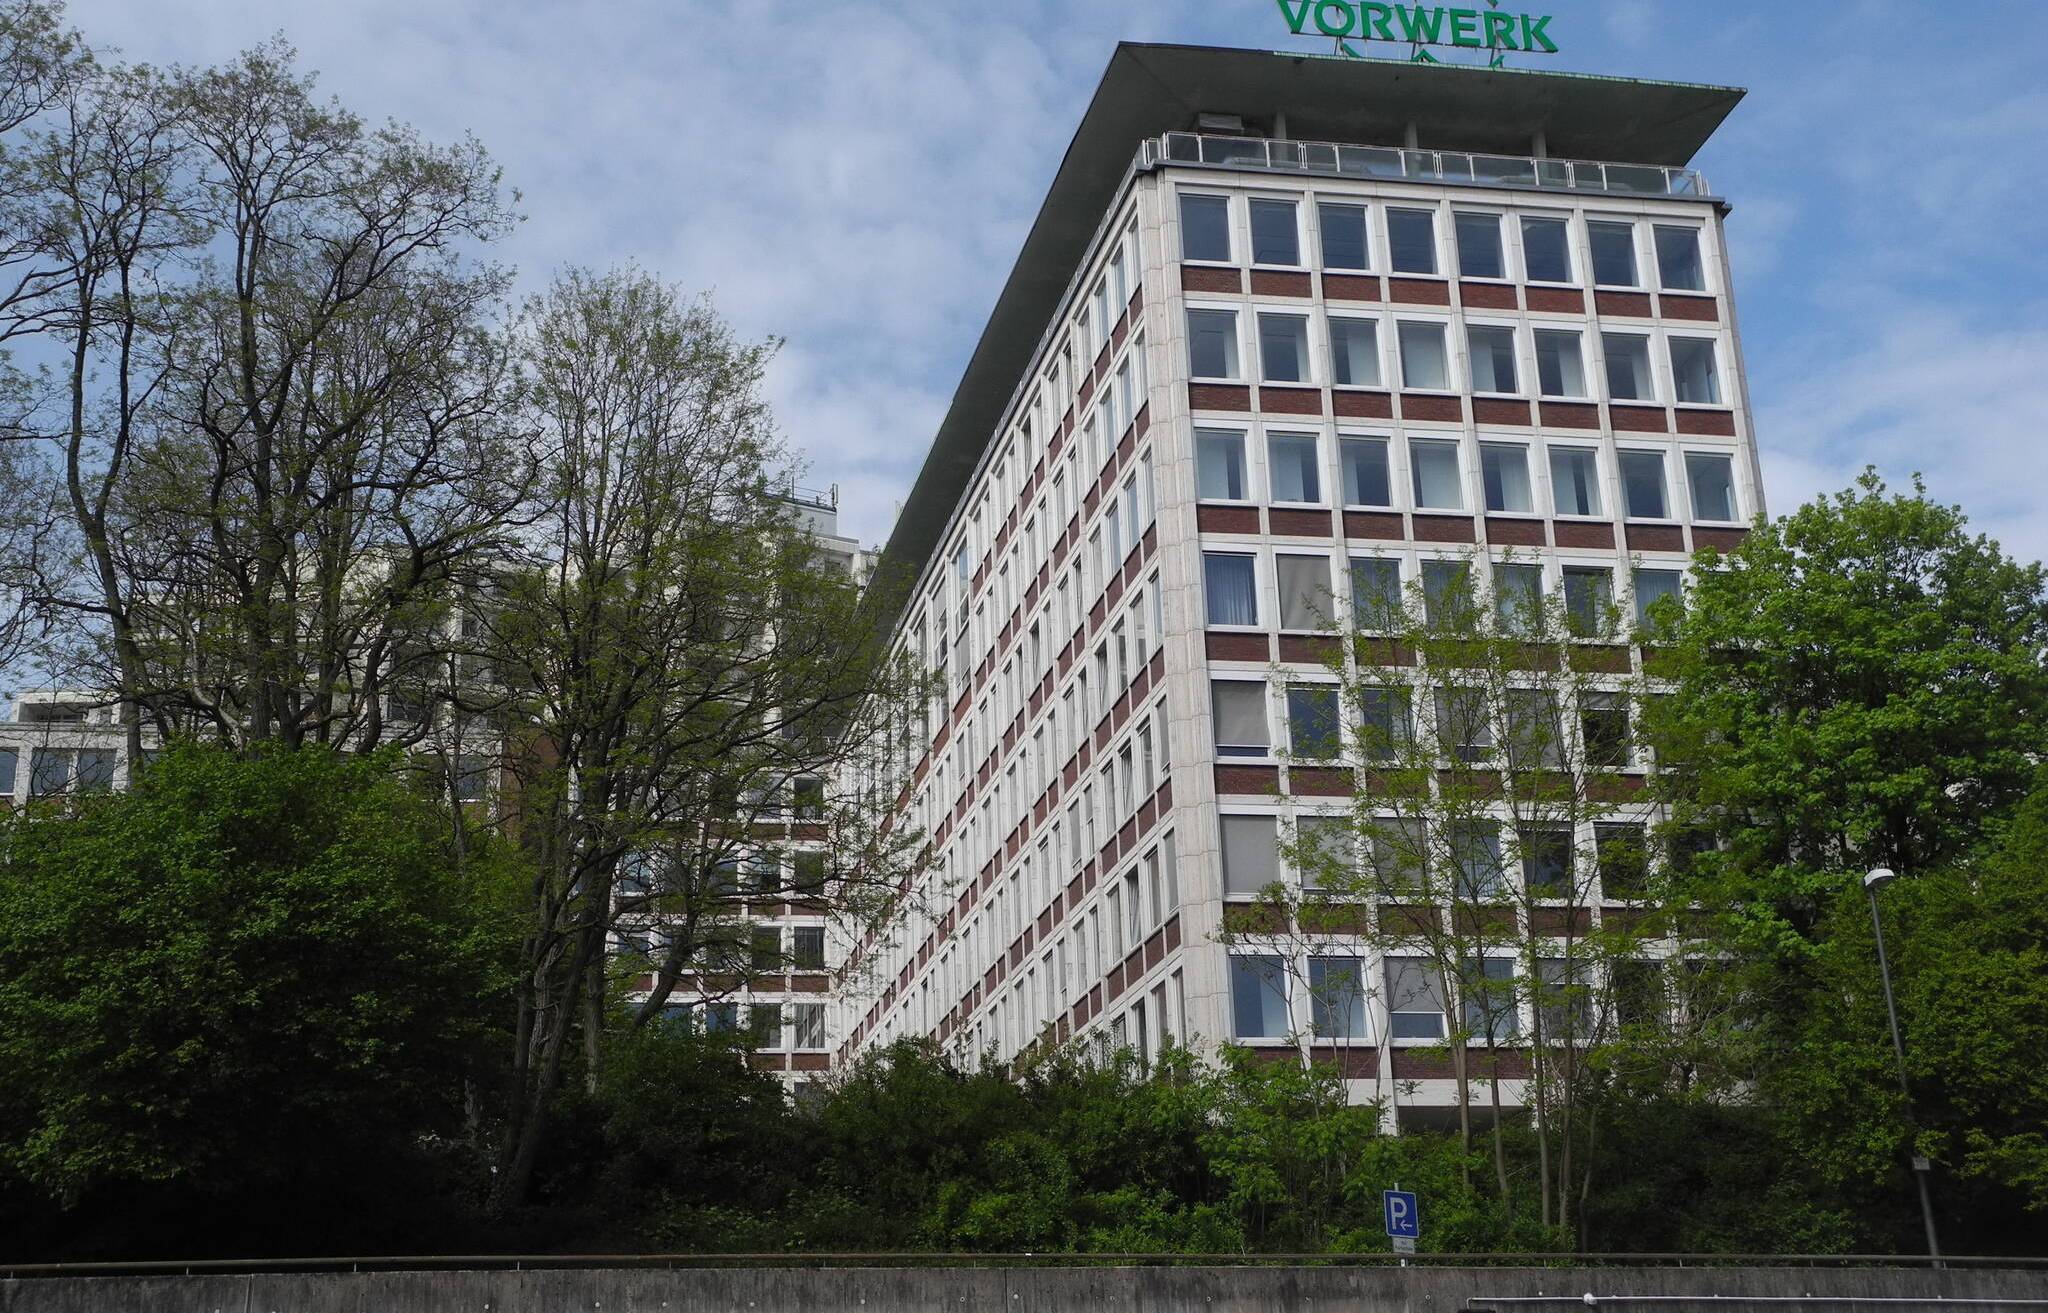  200 Arbeitsplätze werden in Wuppertal bei Vorwerk gestrichen, insgesamt 85 Kündigungen ausgesprochen.  